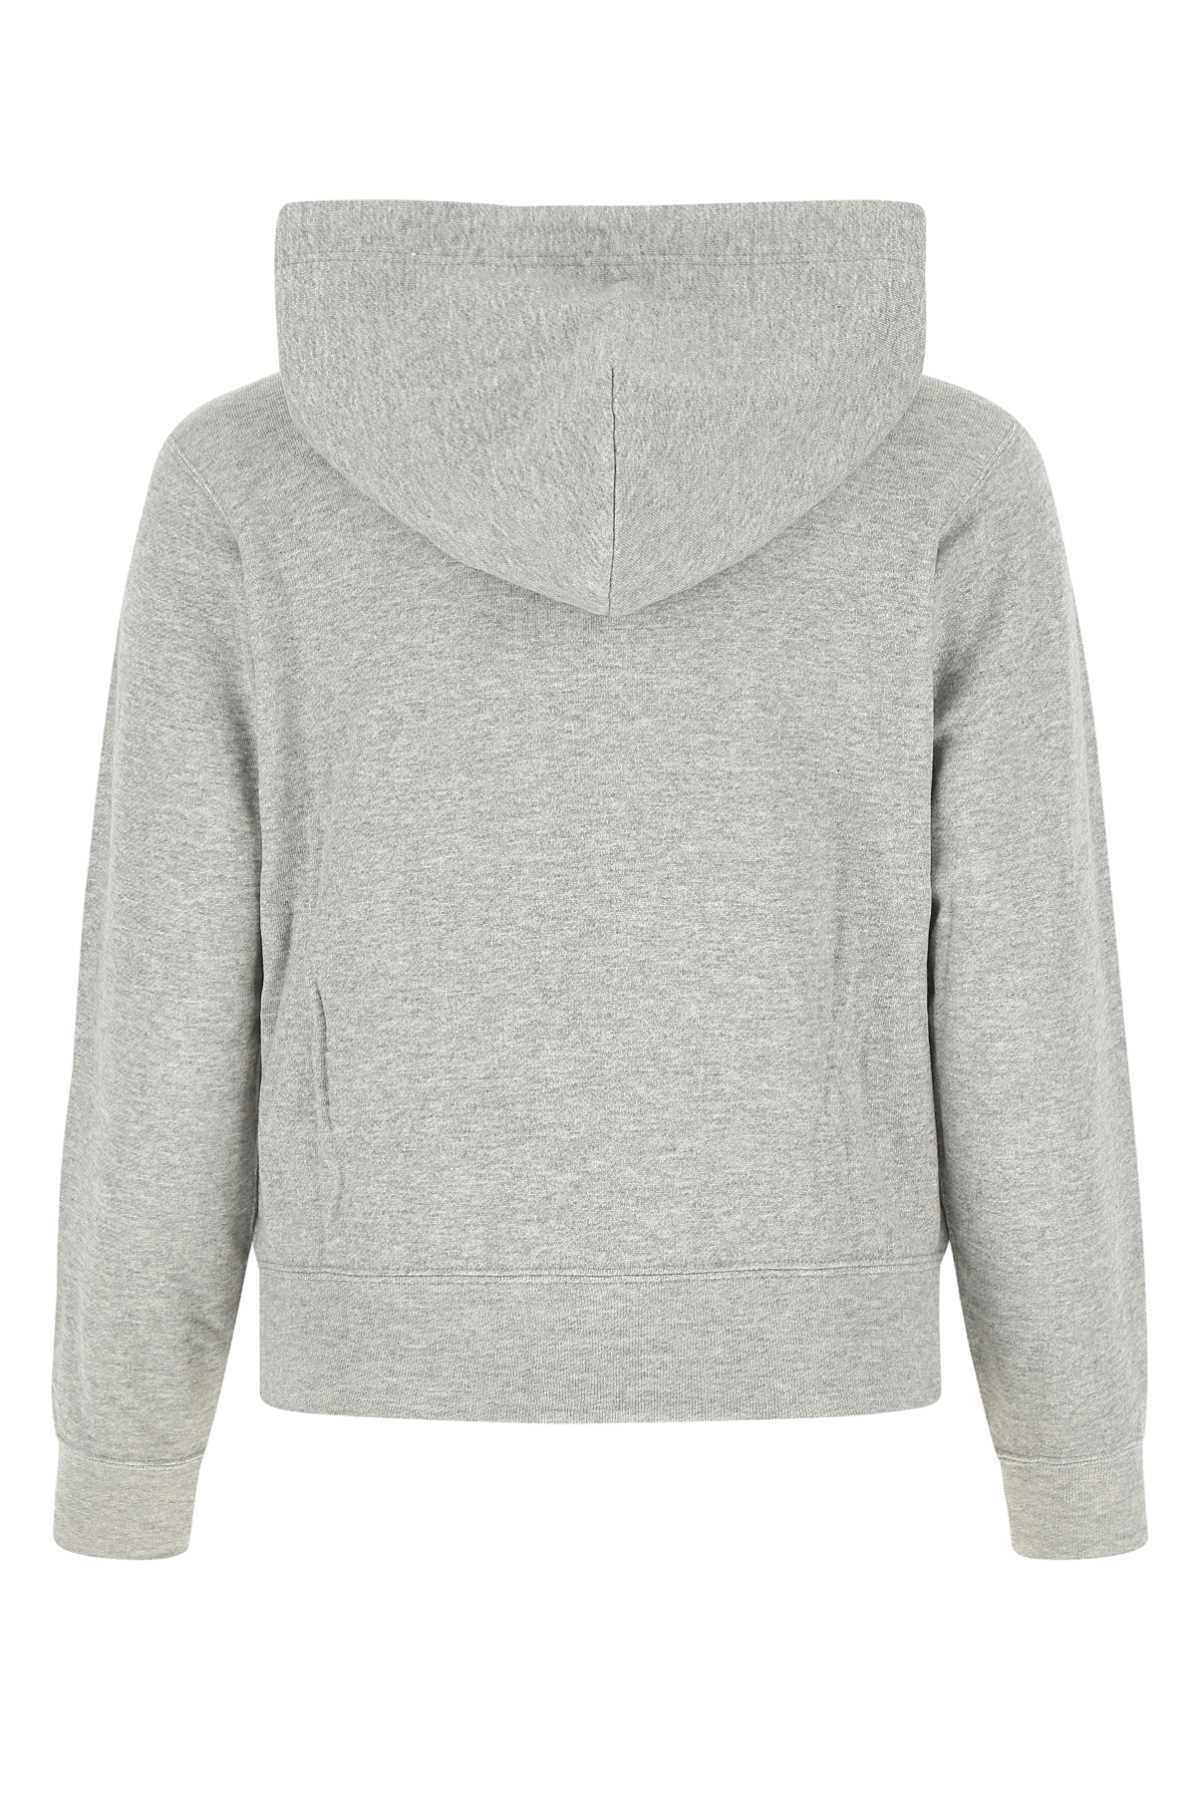 Shop Comme Des Garçons Play Melange Grey Cotton Sweatshirt